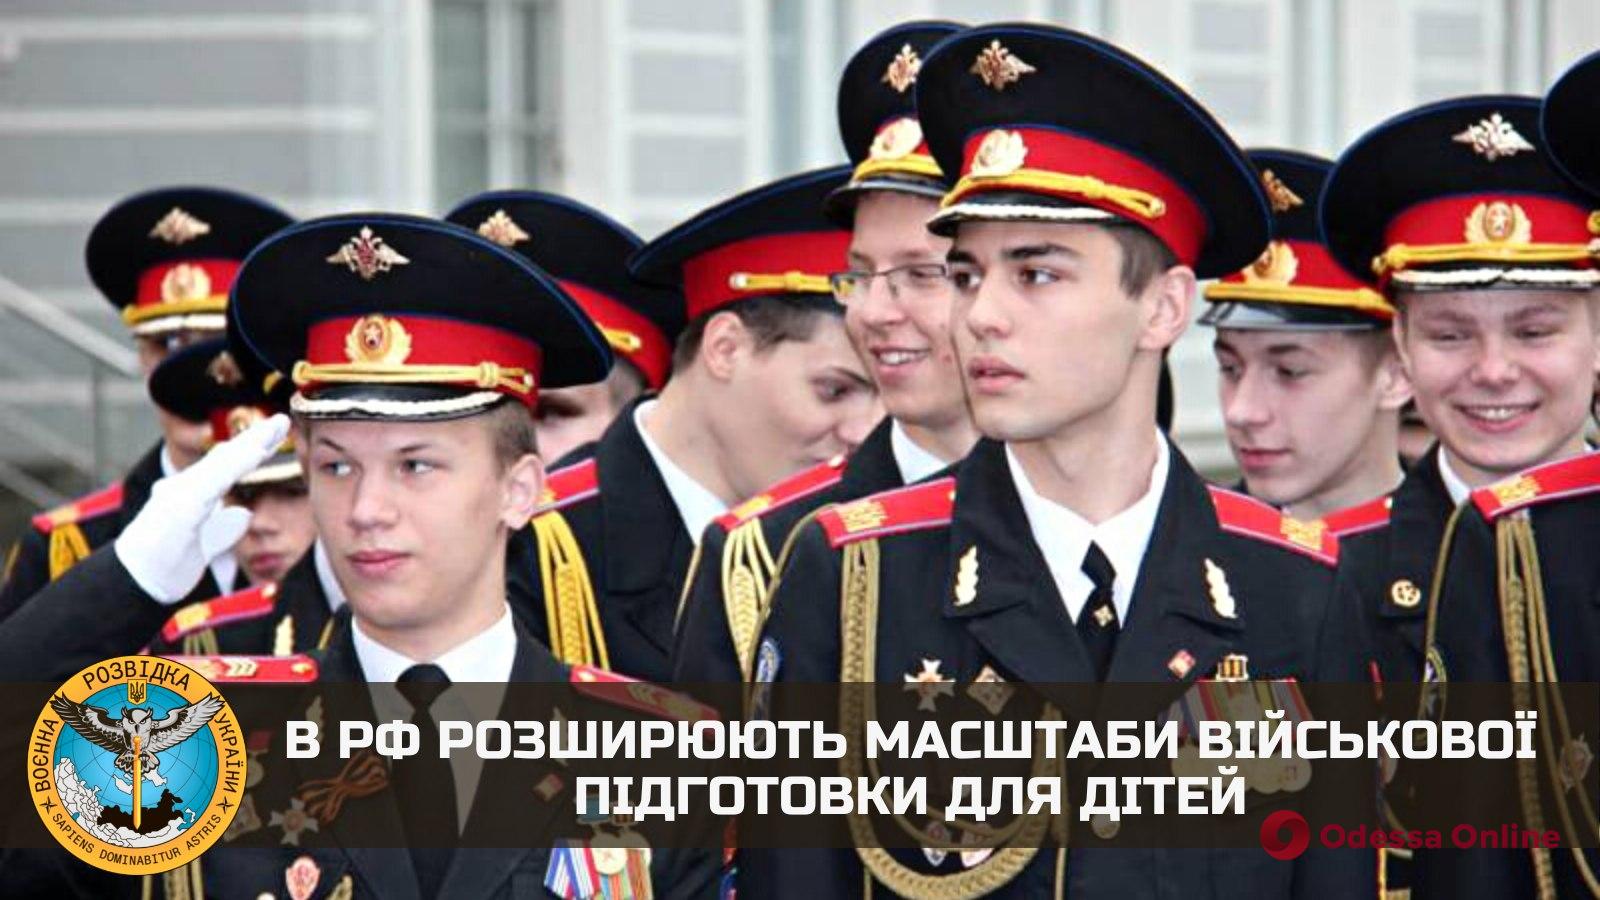 На россии расширяют масштабы военной подготовки для детей, — разведка